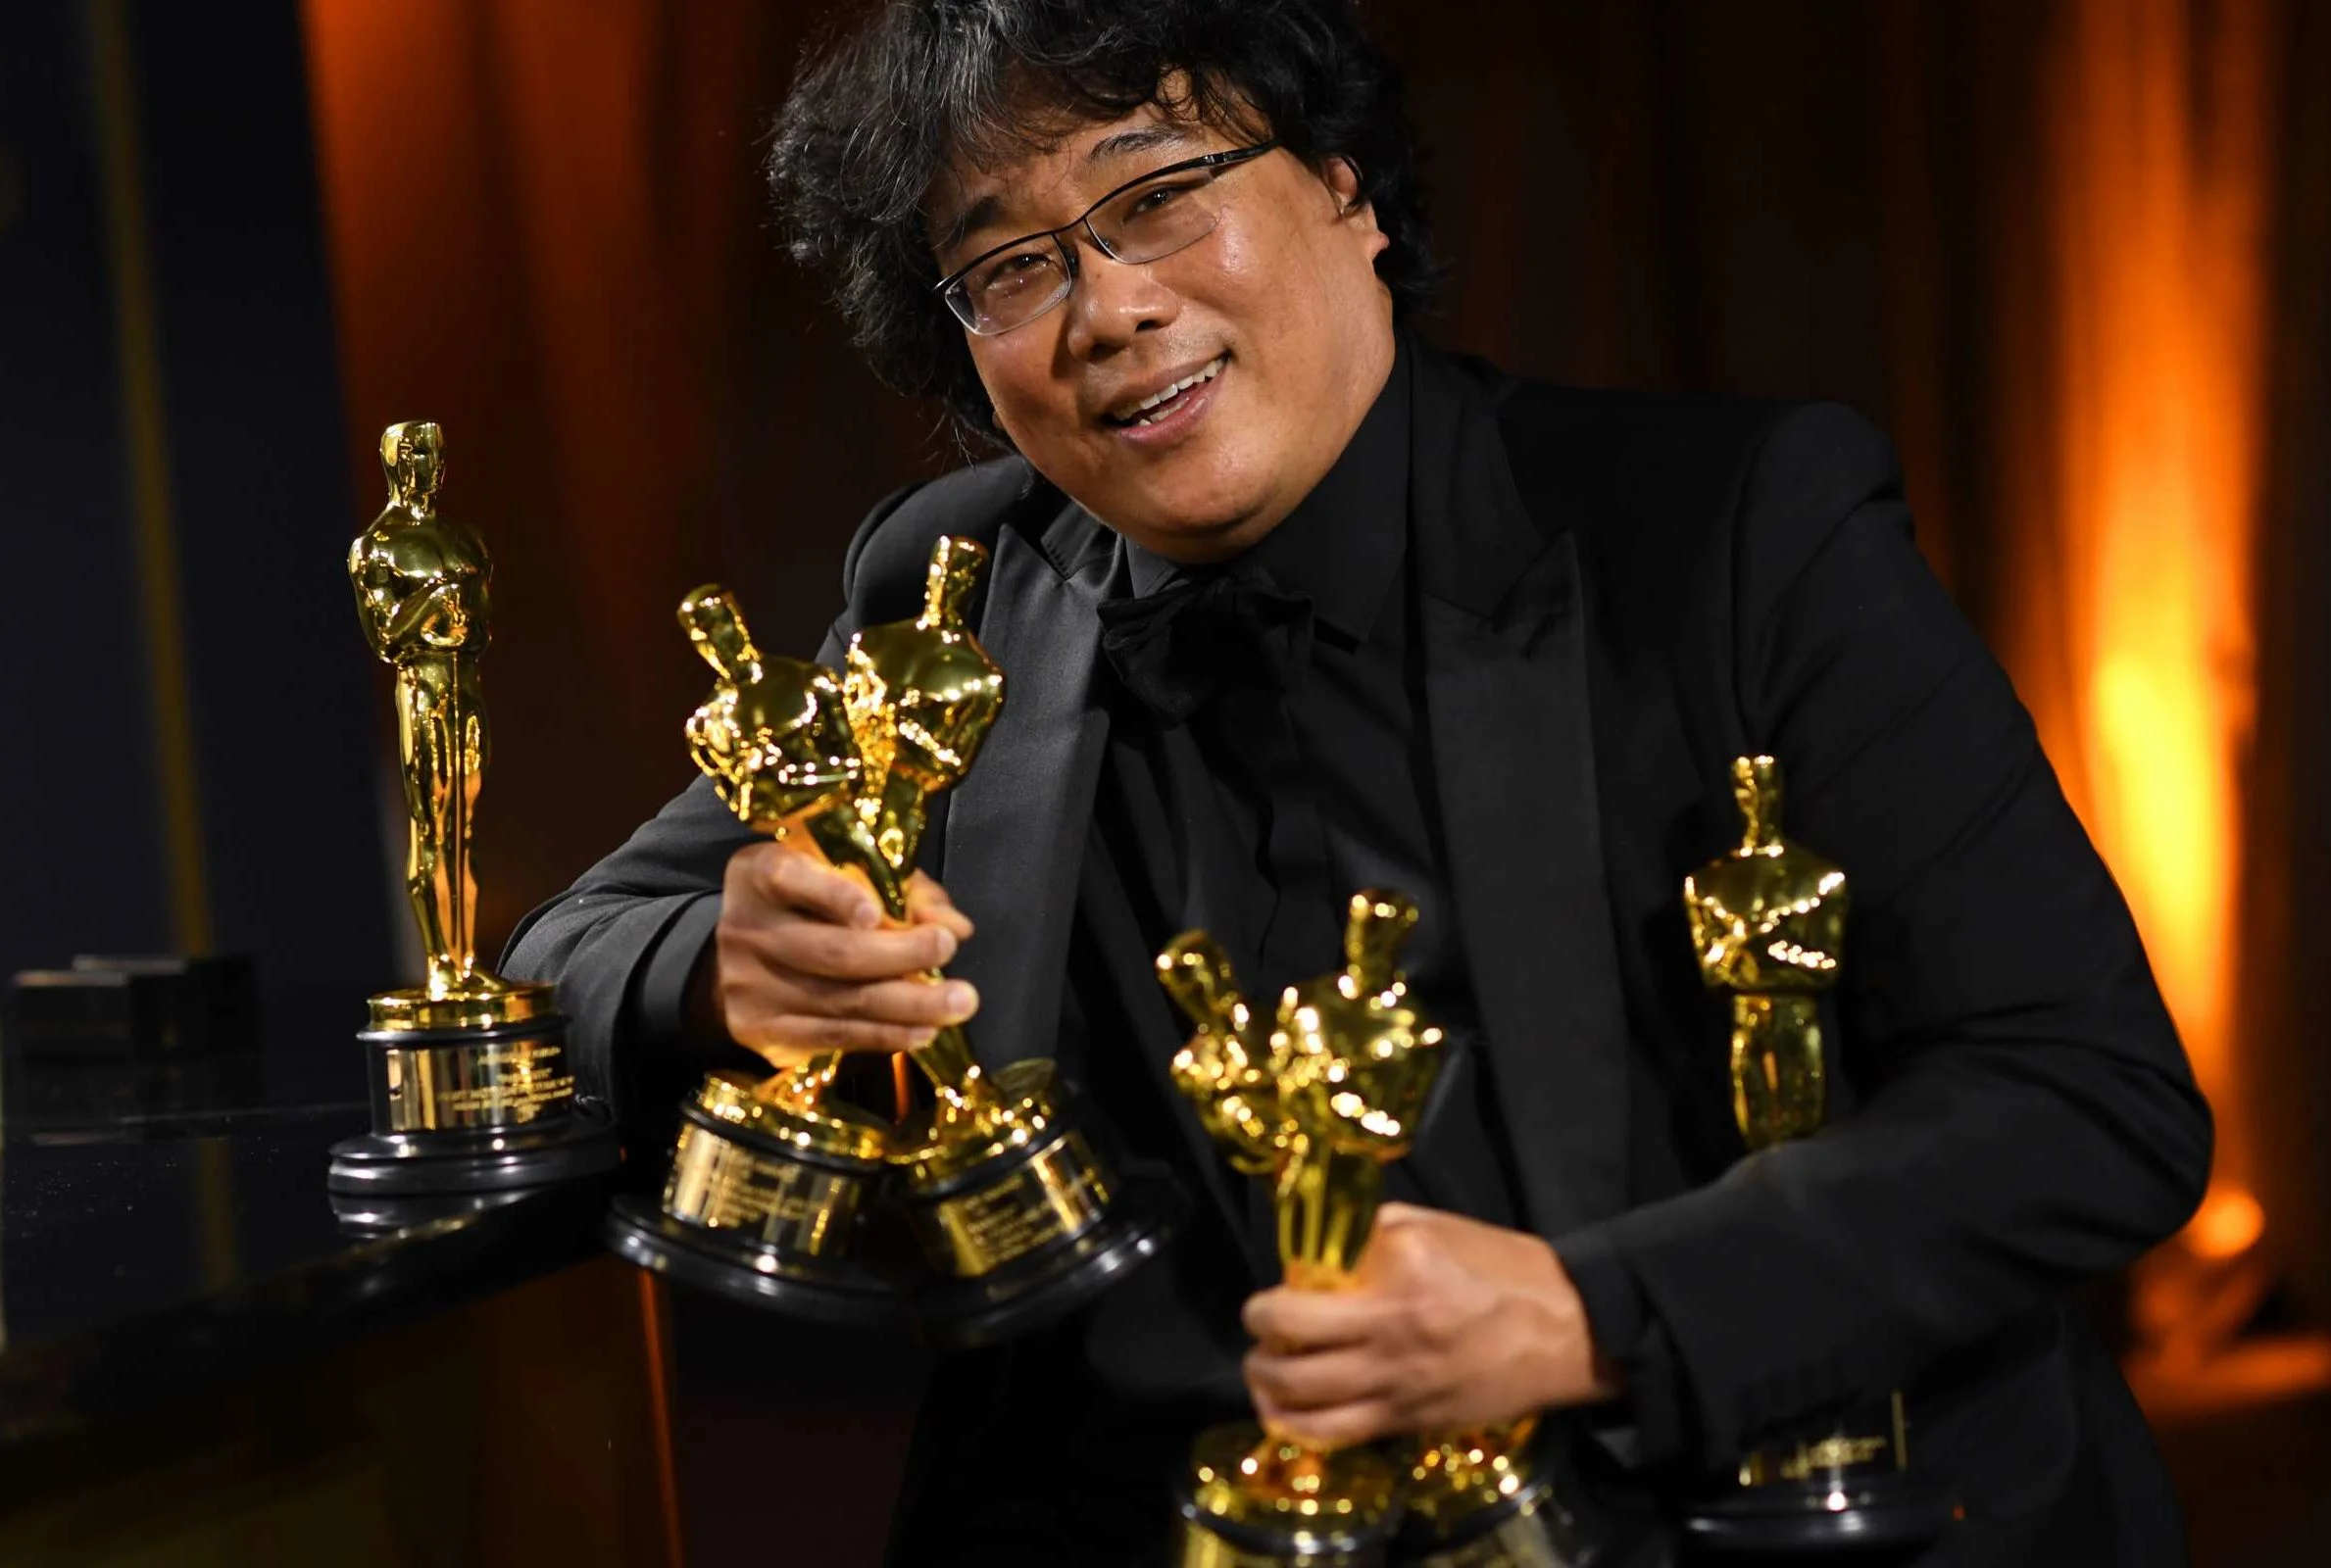 В честь двадцатилетия своего первого фильма оскароносный режиссер-сценарист «Паразитов» Пон Джун-хо выбрал 20 многообещающих режиссеров, чьи работы, по его мнению, будут играть важную роль в истории кино в следующие 20 лет.